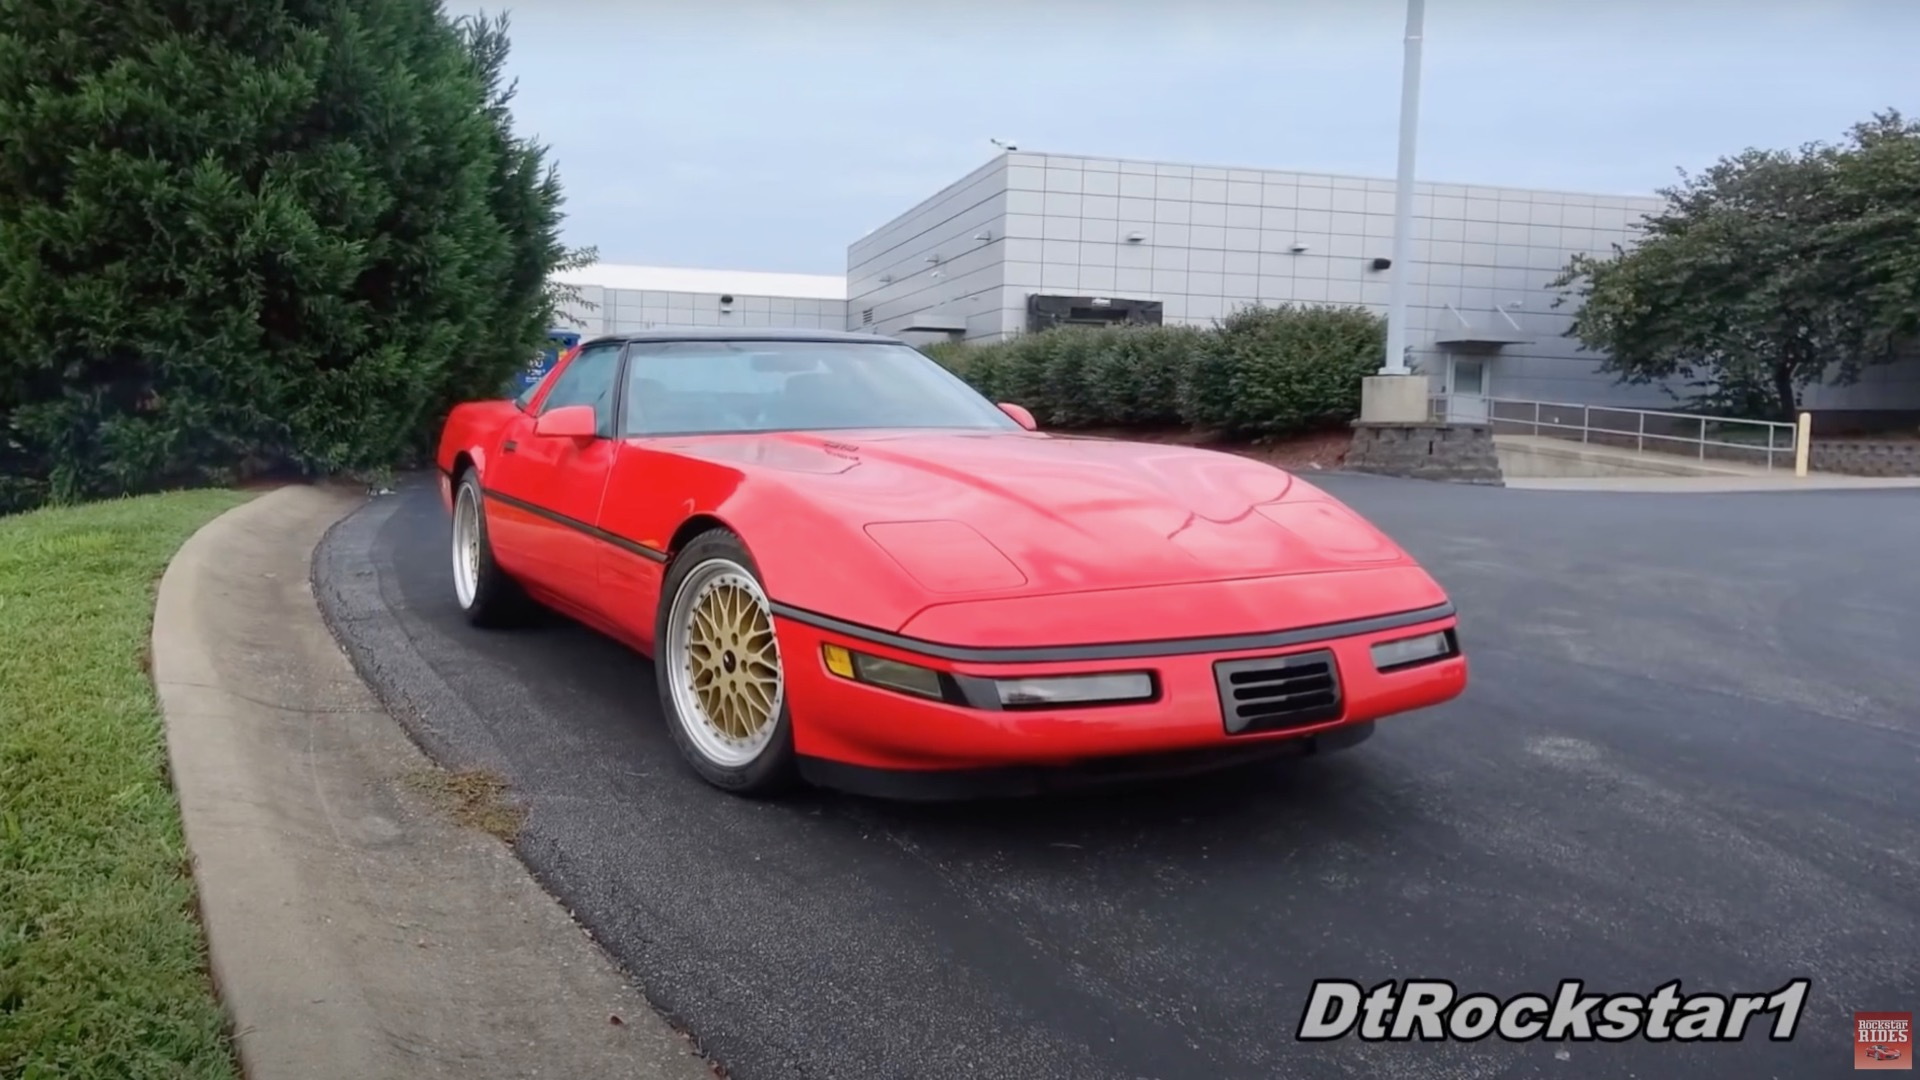 Chevrolet Corvette ZR-12 prototype (via DtRockstar1 on YouTube)